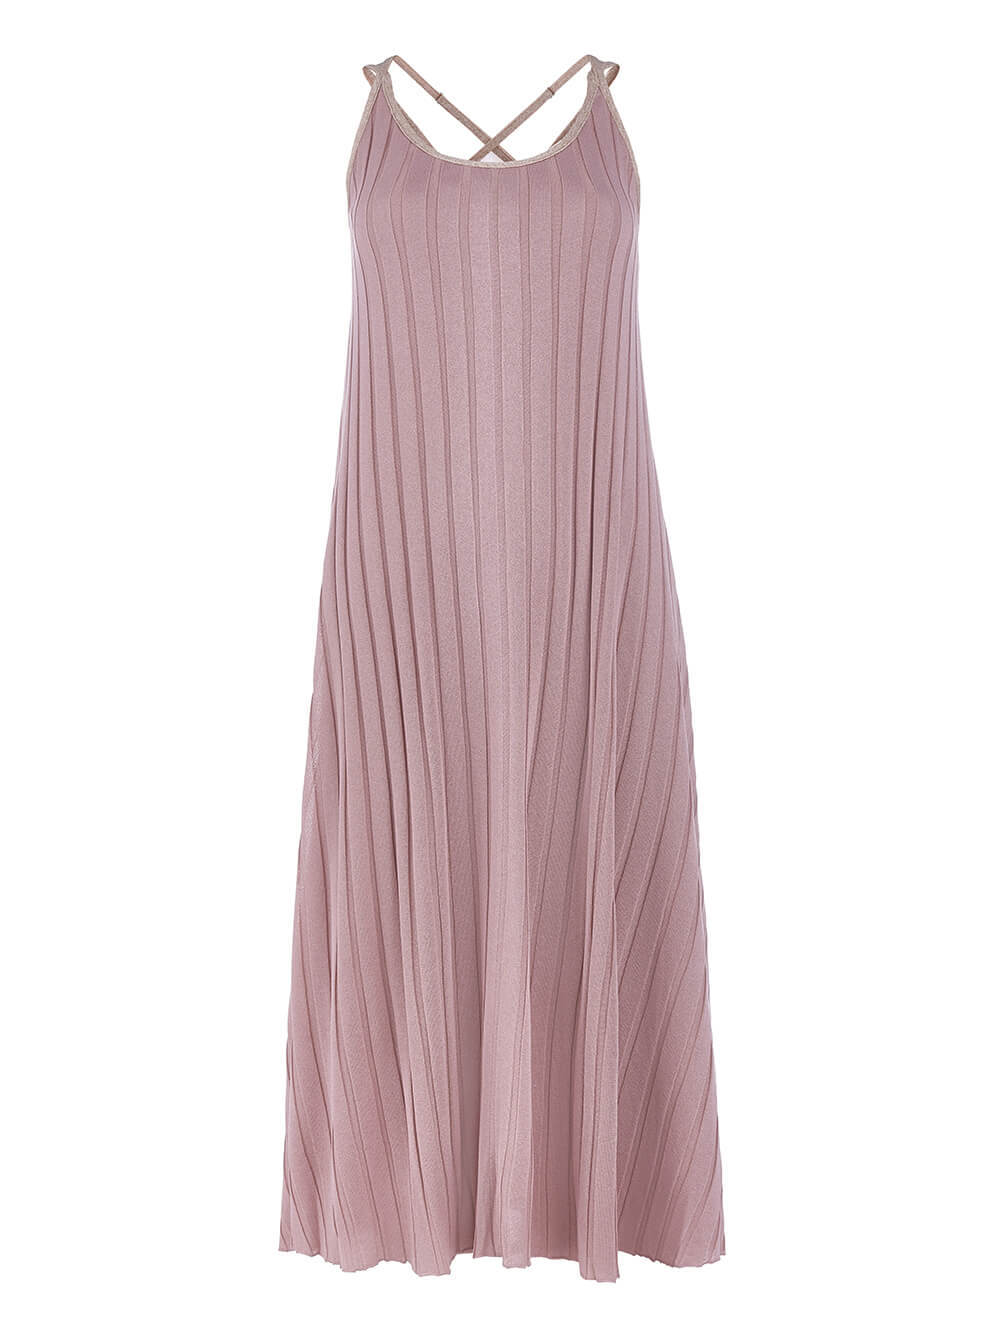 Женское платье светло-розового цвета из вискозы